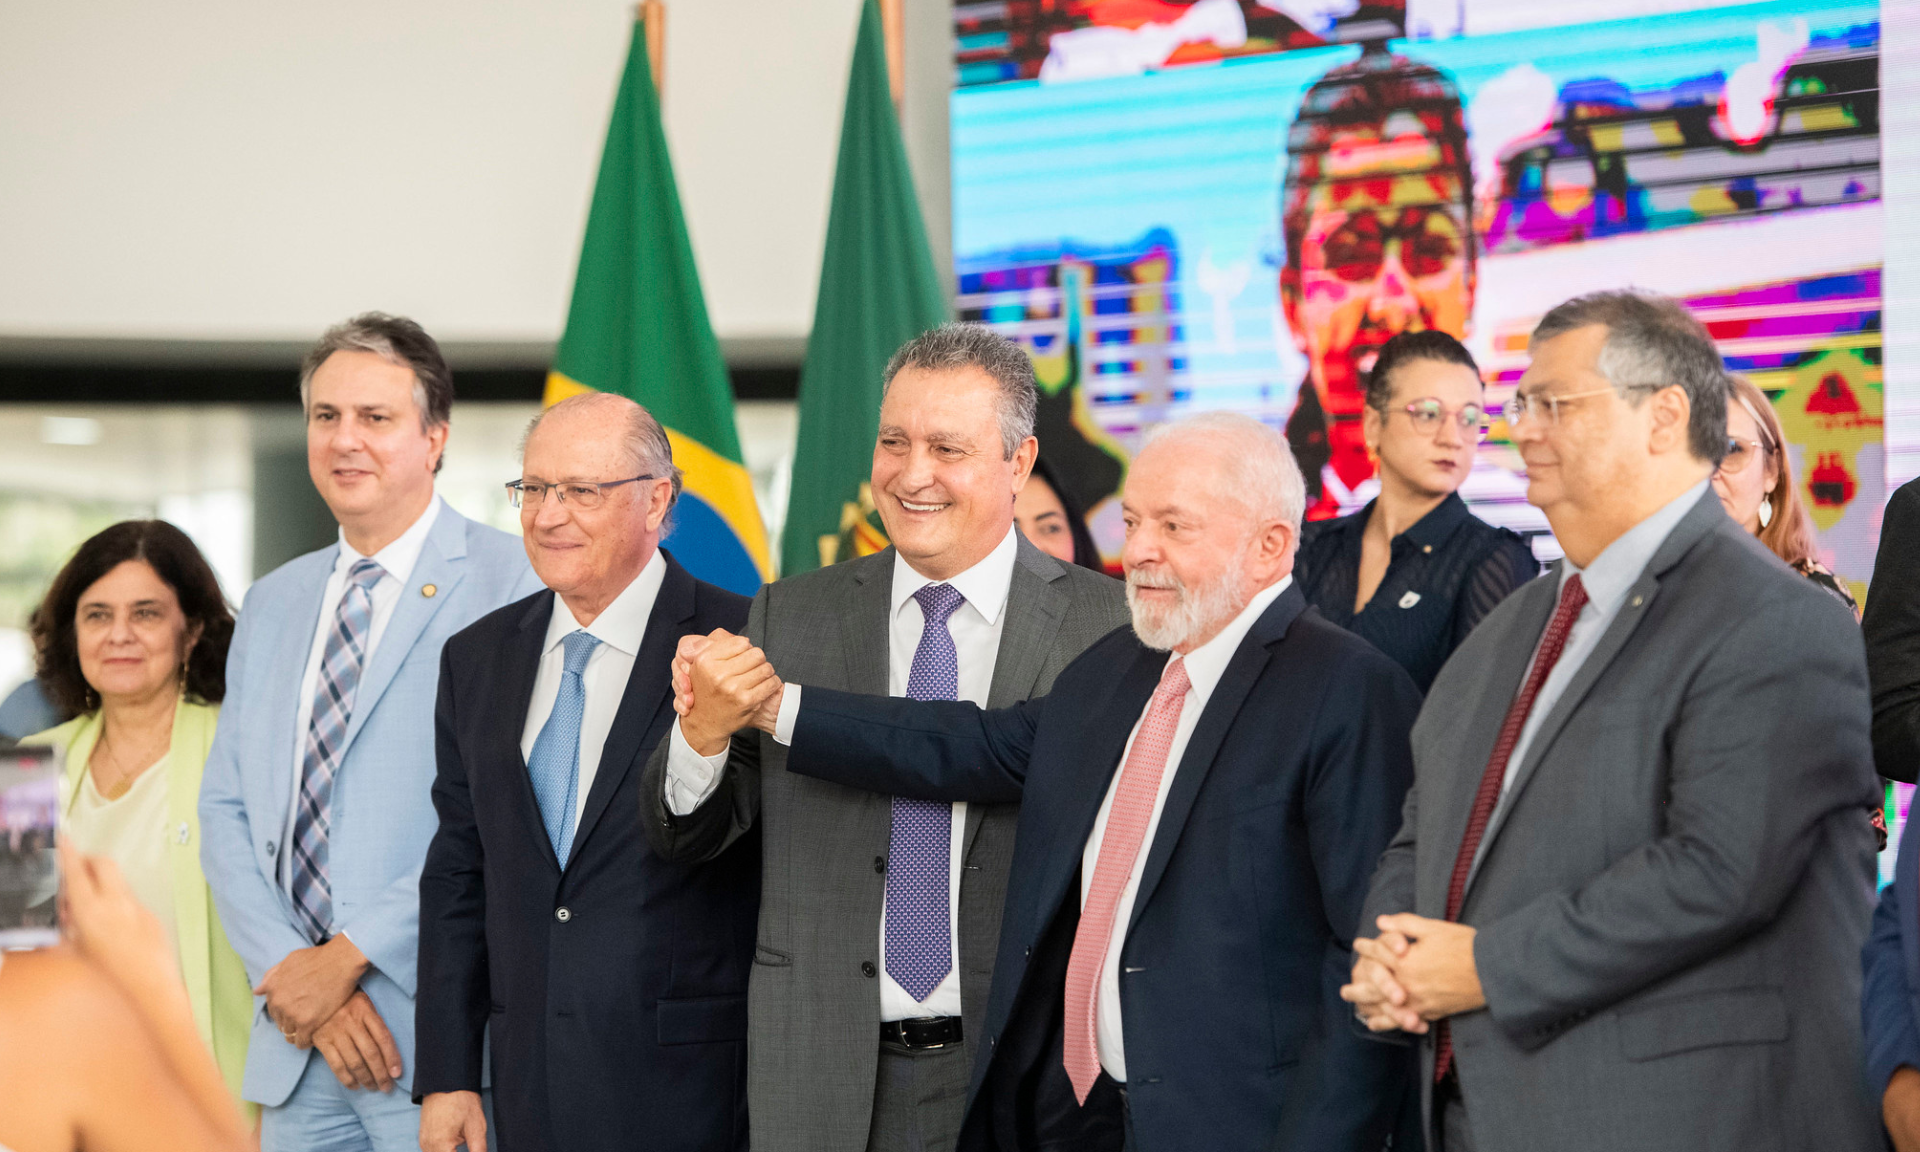 Lançada nessa quarta-feira (27) pelo presidente Lula, estratégia prioriza empreendimentos nas áreas de Cidades, Saúde, Cultura, Esporte, Educação e Justiça